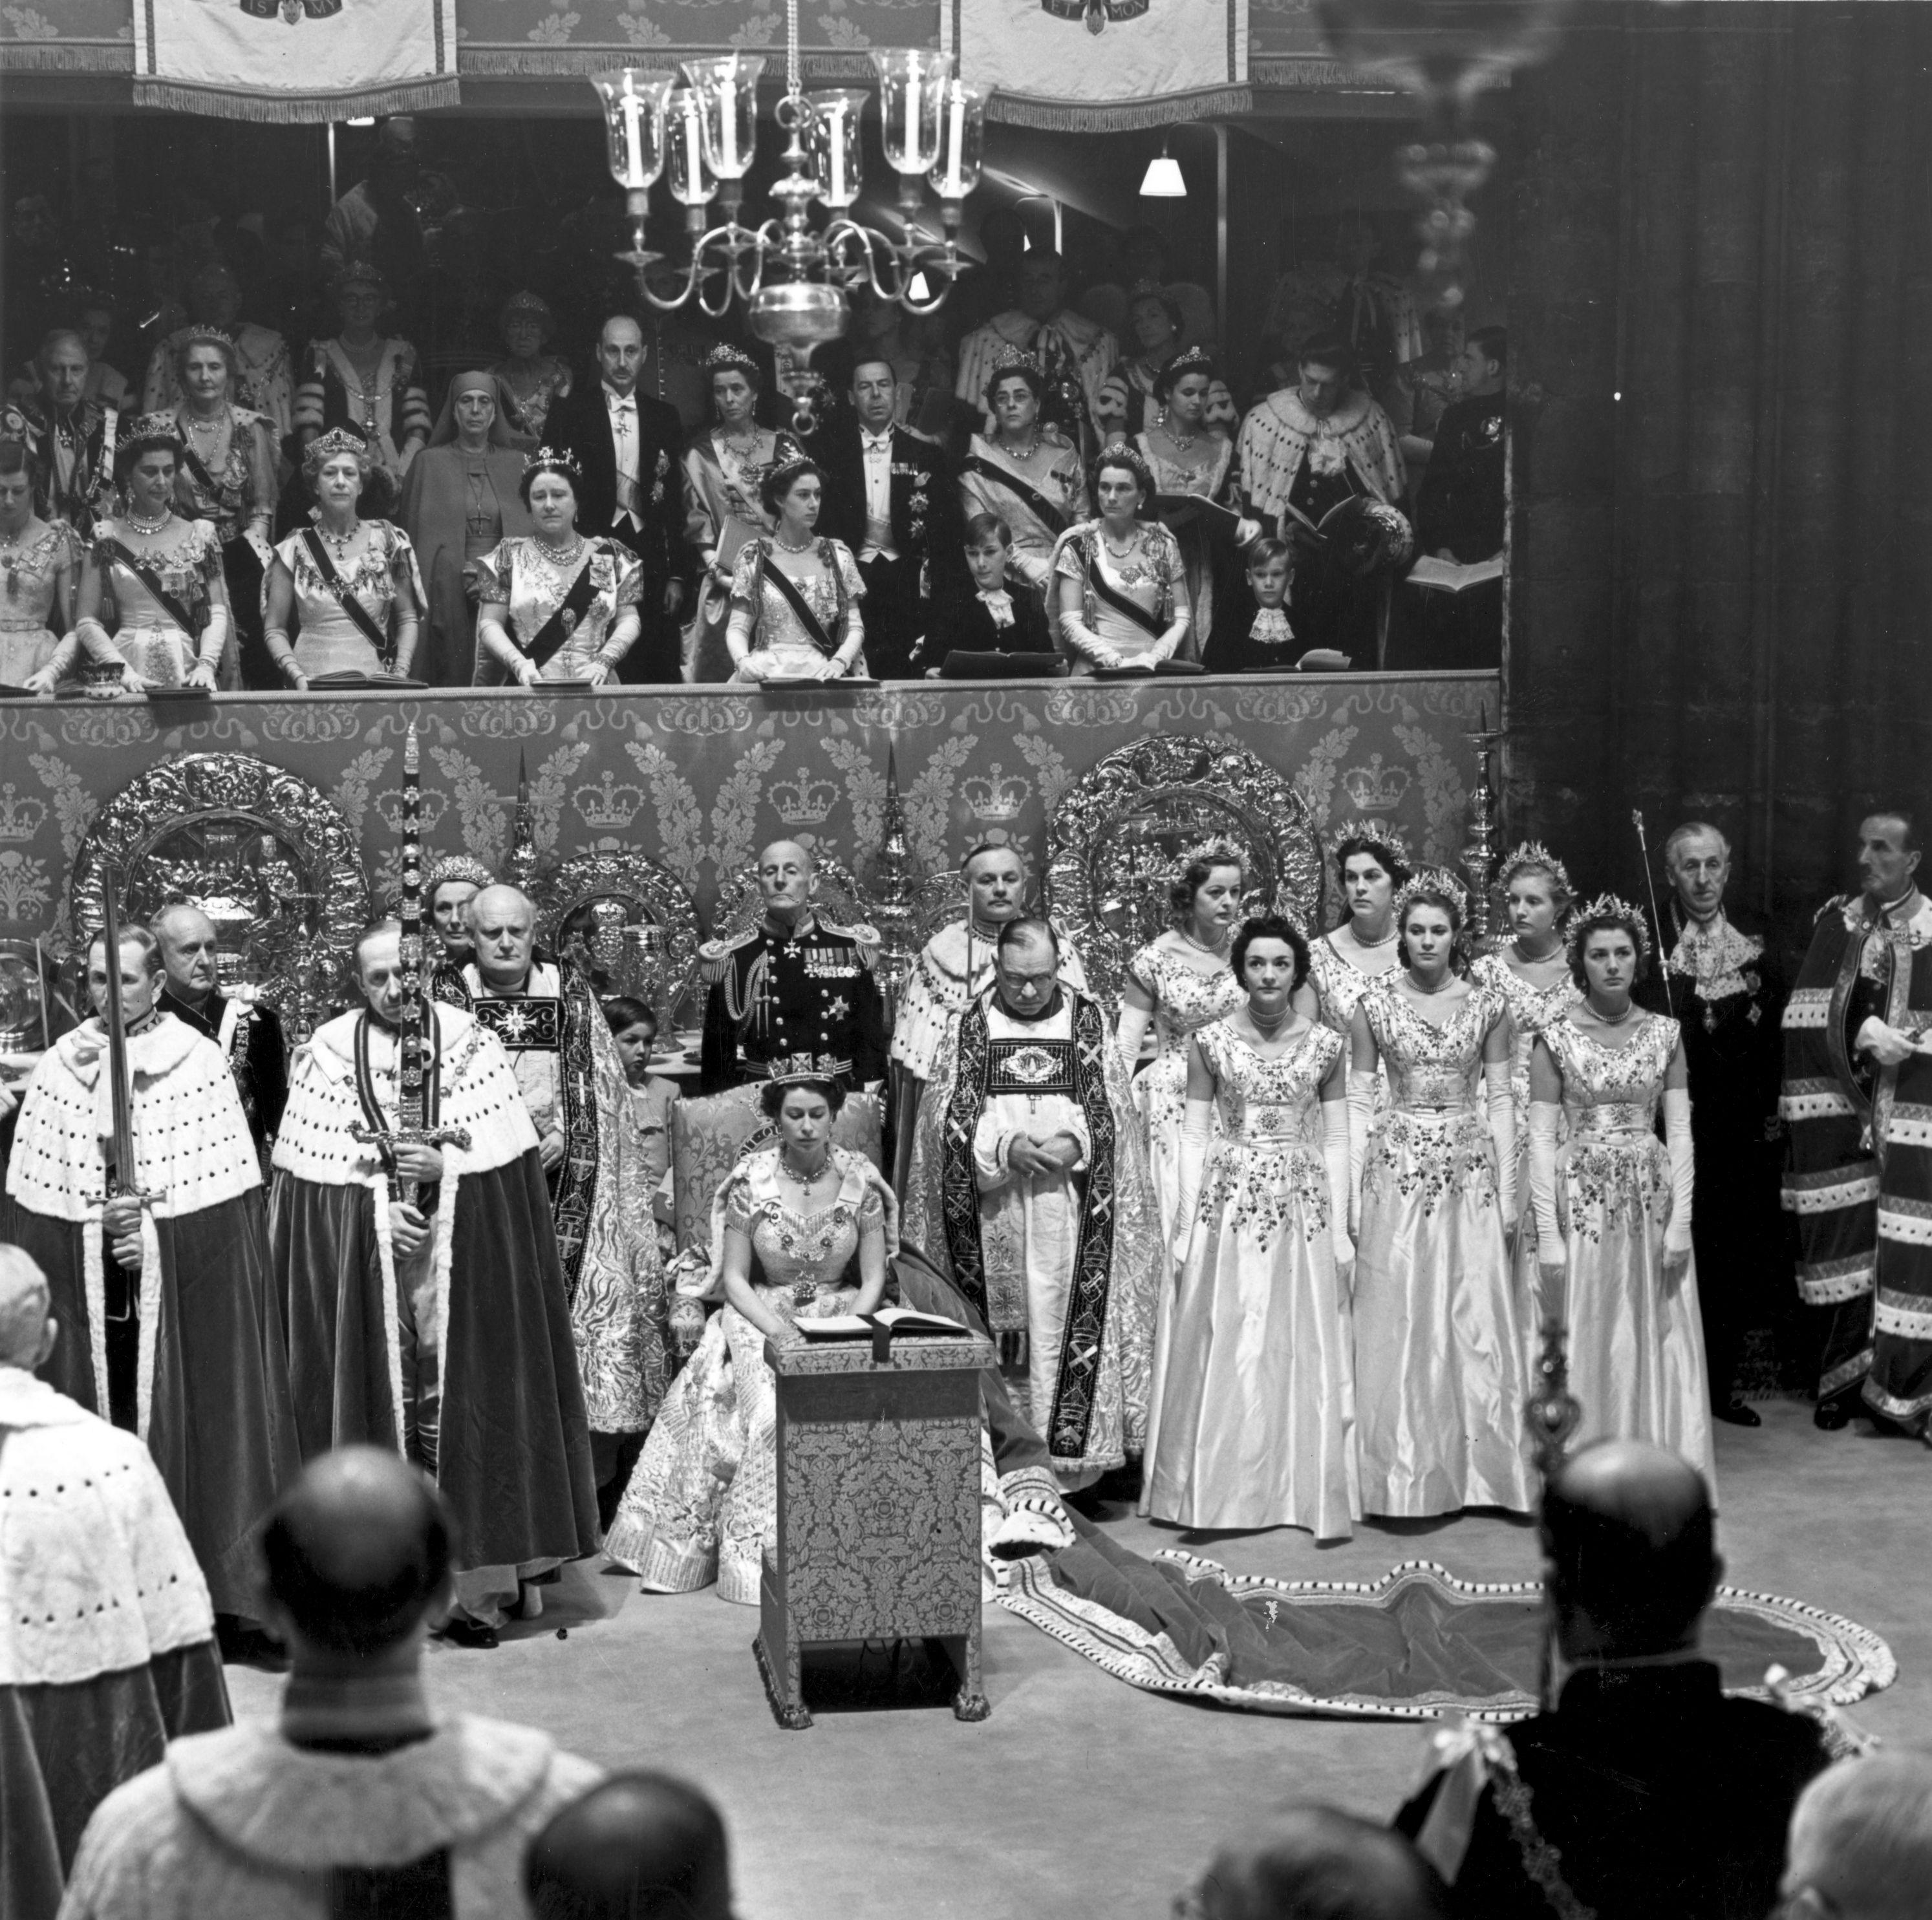 Une image du couronnement de la reine Elizabeth II (Lady Jane est au premier rang tout à droite). [Getty Images - Fox Photos]